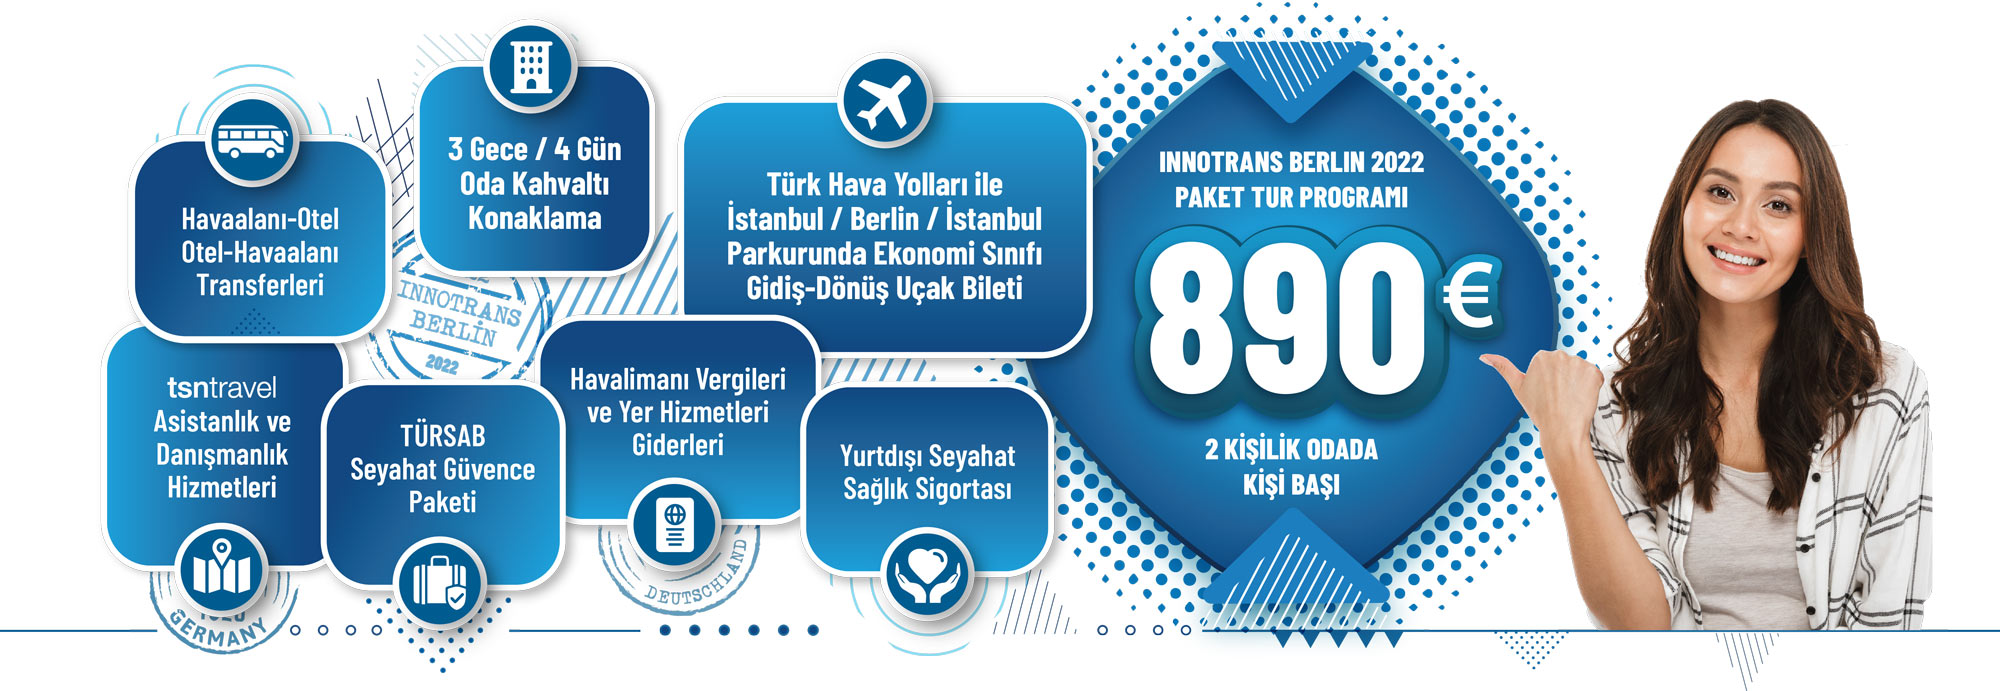 InnoTrans Berlin 2022 Uluslararası Ulaşım Teknolojileri Fuarı | tsntravel | 3 gece / 4 gün paket tur programı iki kişilik odada kişi başı 890 Euro!